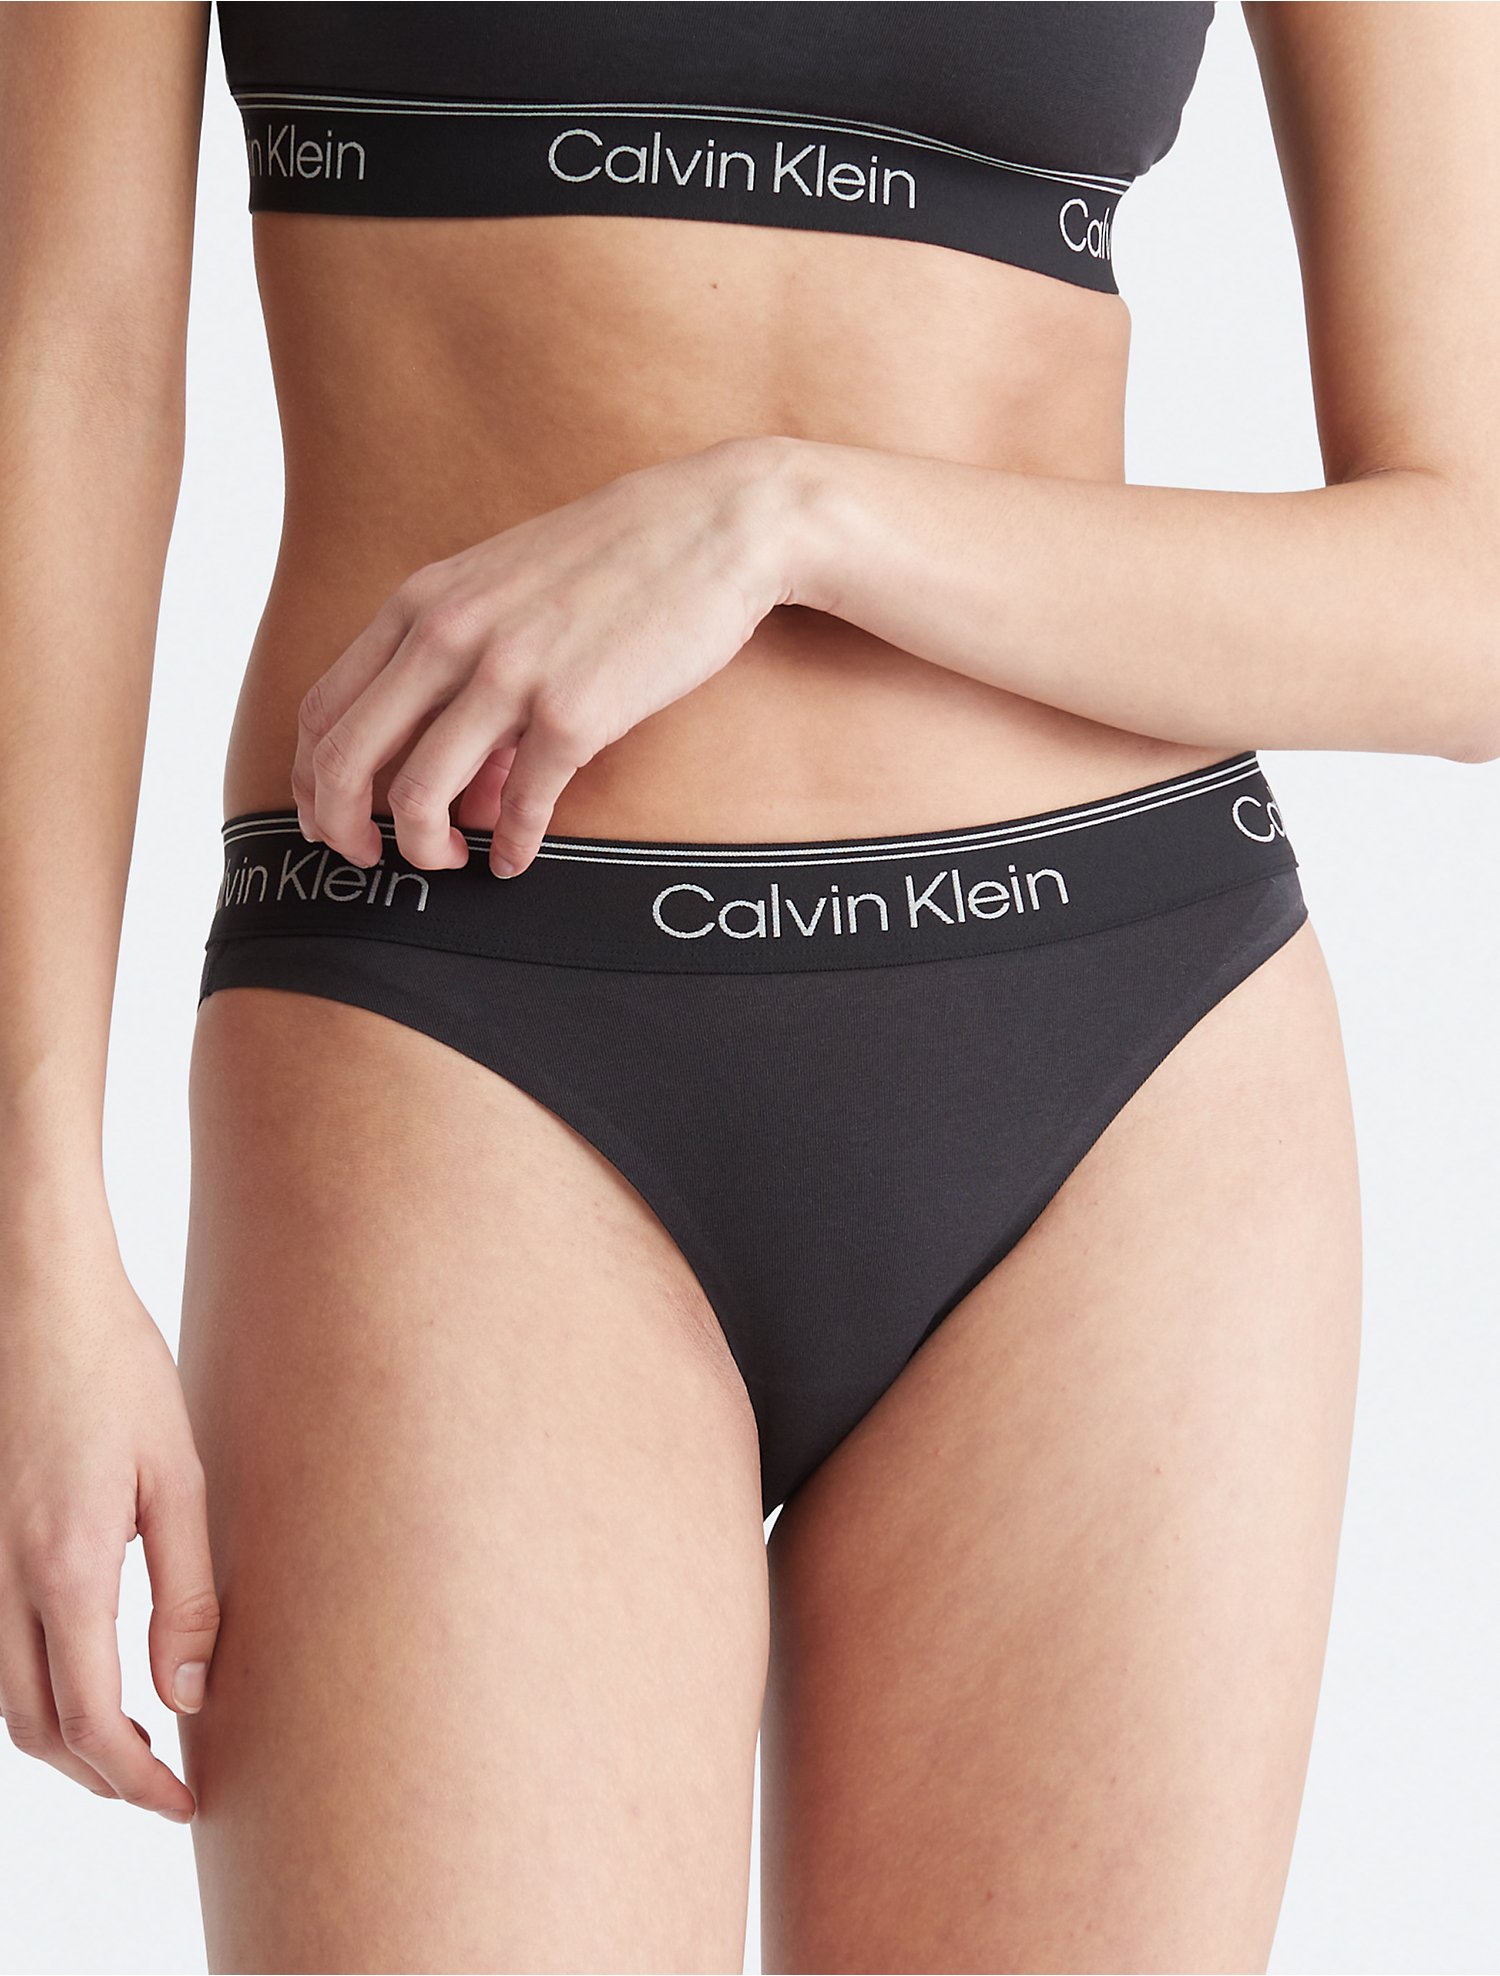 Calvin Klein Athletic Tanga | Calvin Klein® USA